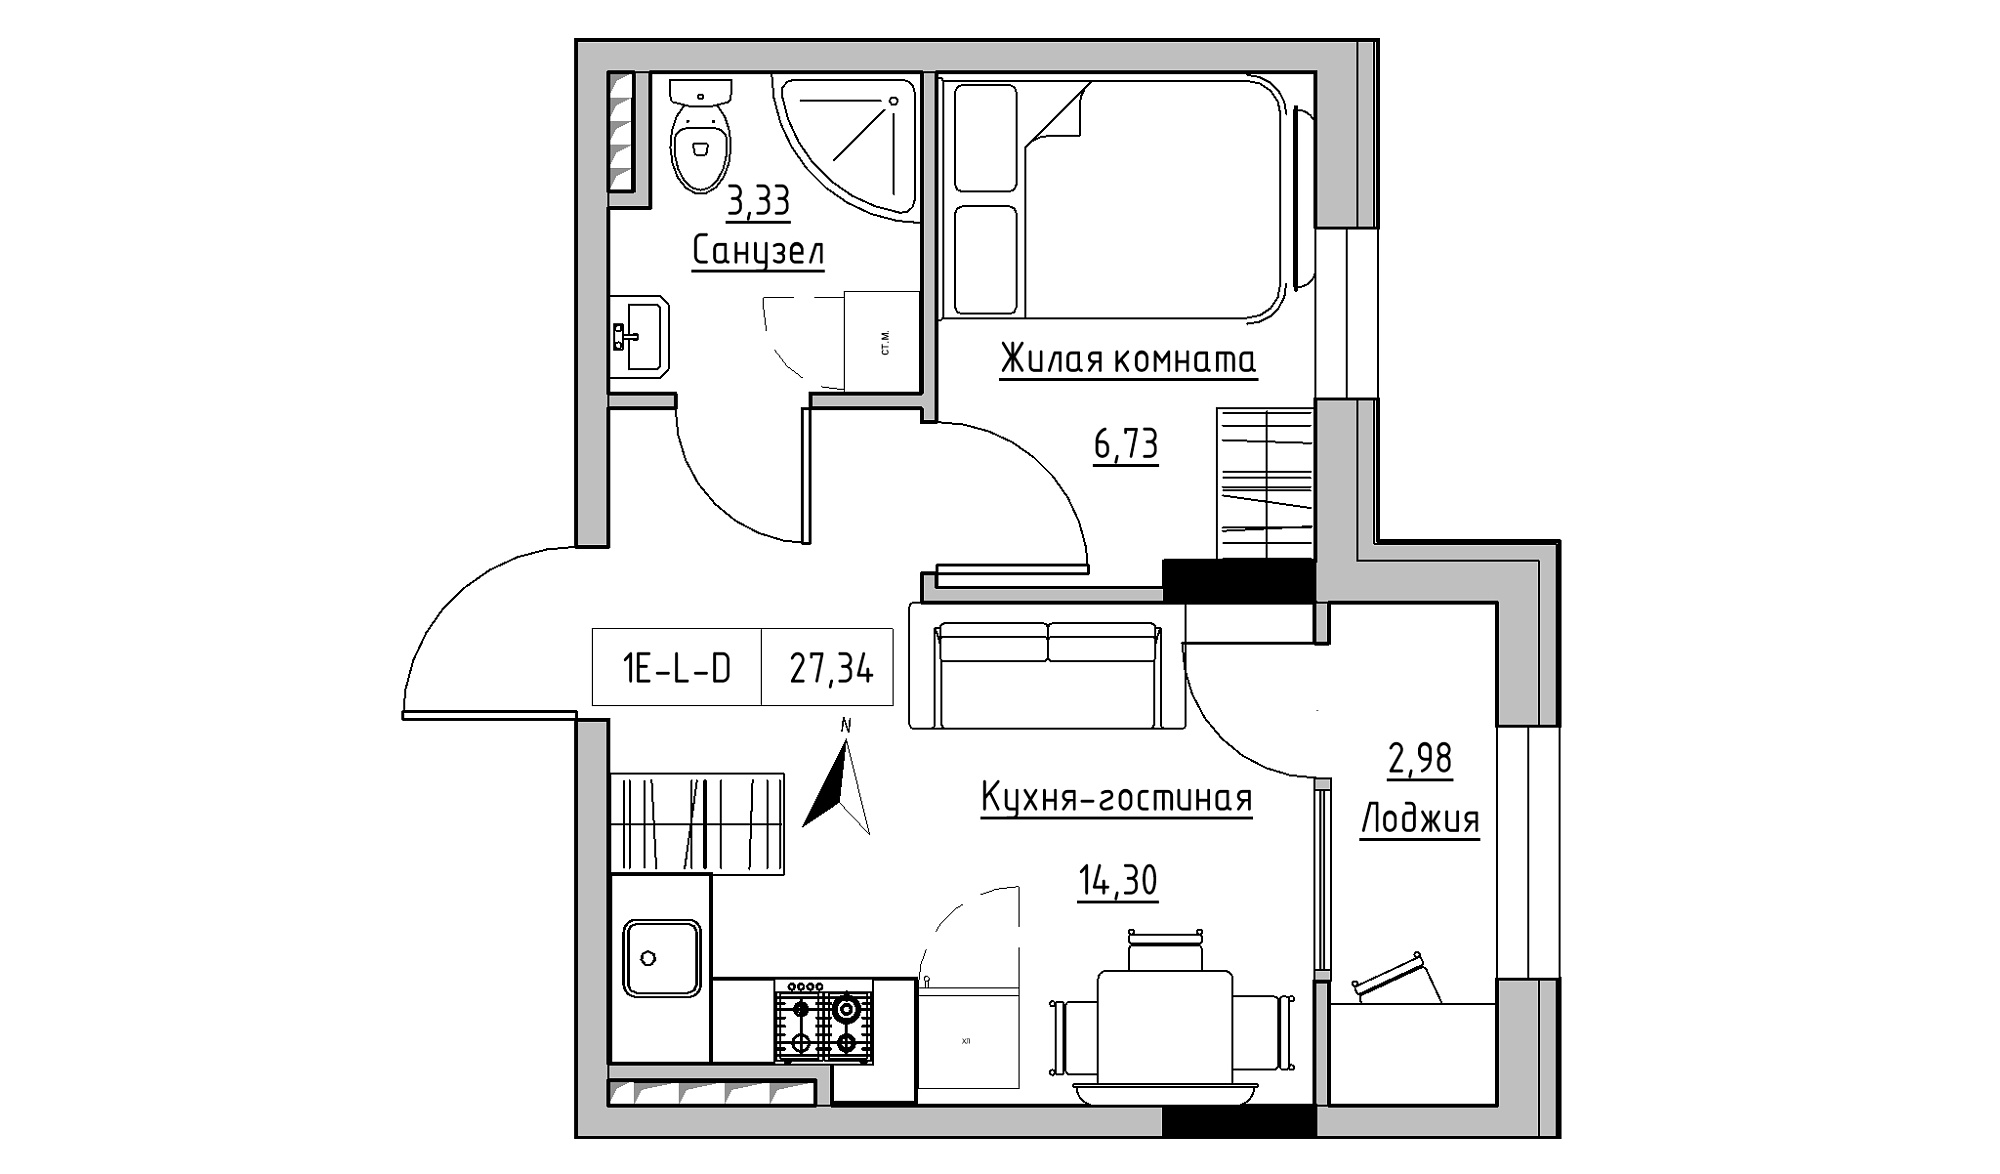 Планировка 1-к квартира площей 27.34м2, KS-025-04/0001.